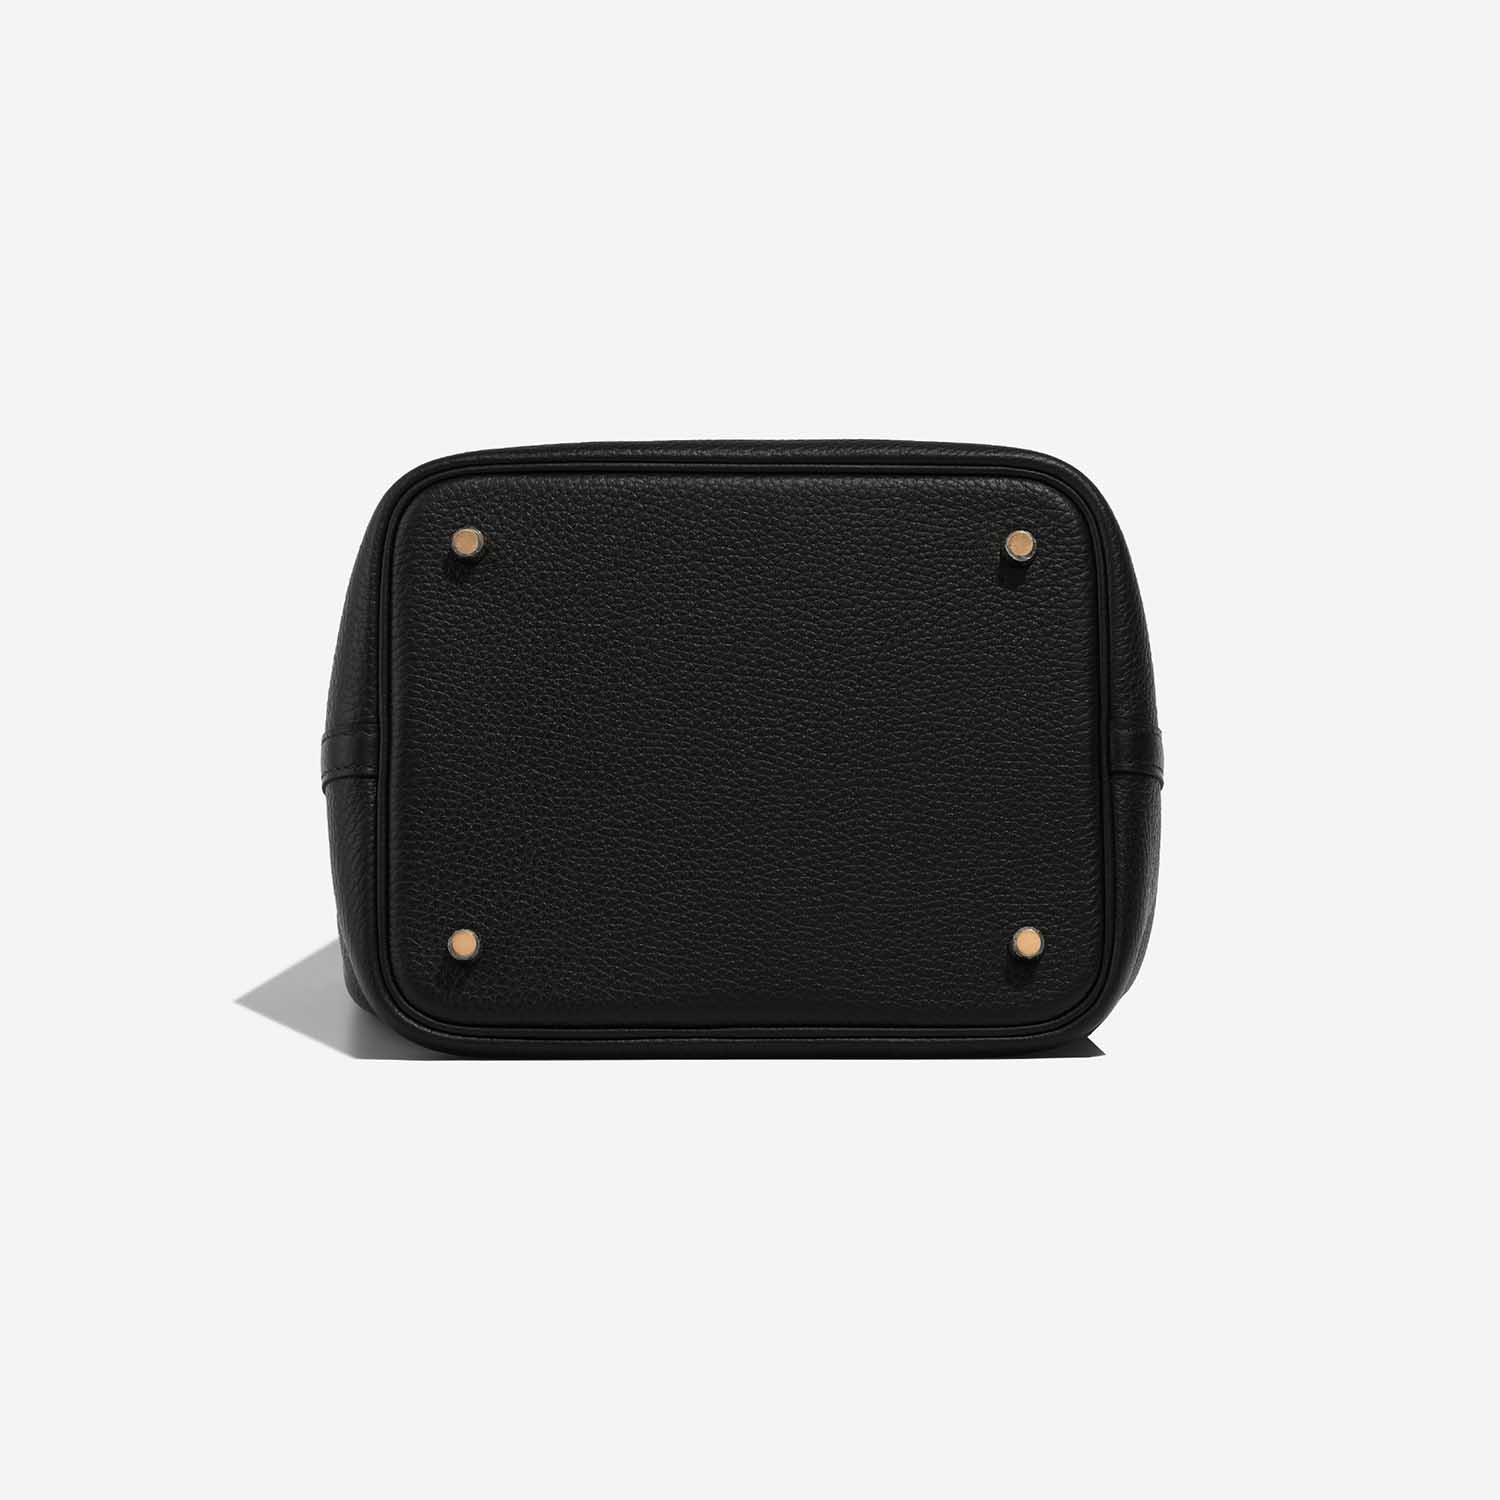 Hermès Picotin 22 Black Bottom | Verkaufen Sie Ihre Designer-Tasche auf Saclab.com